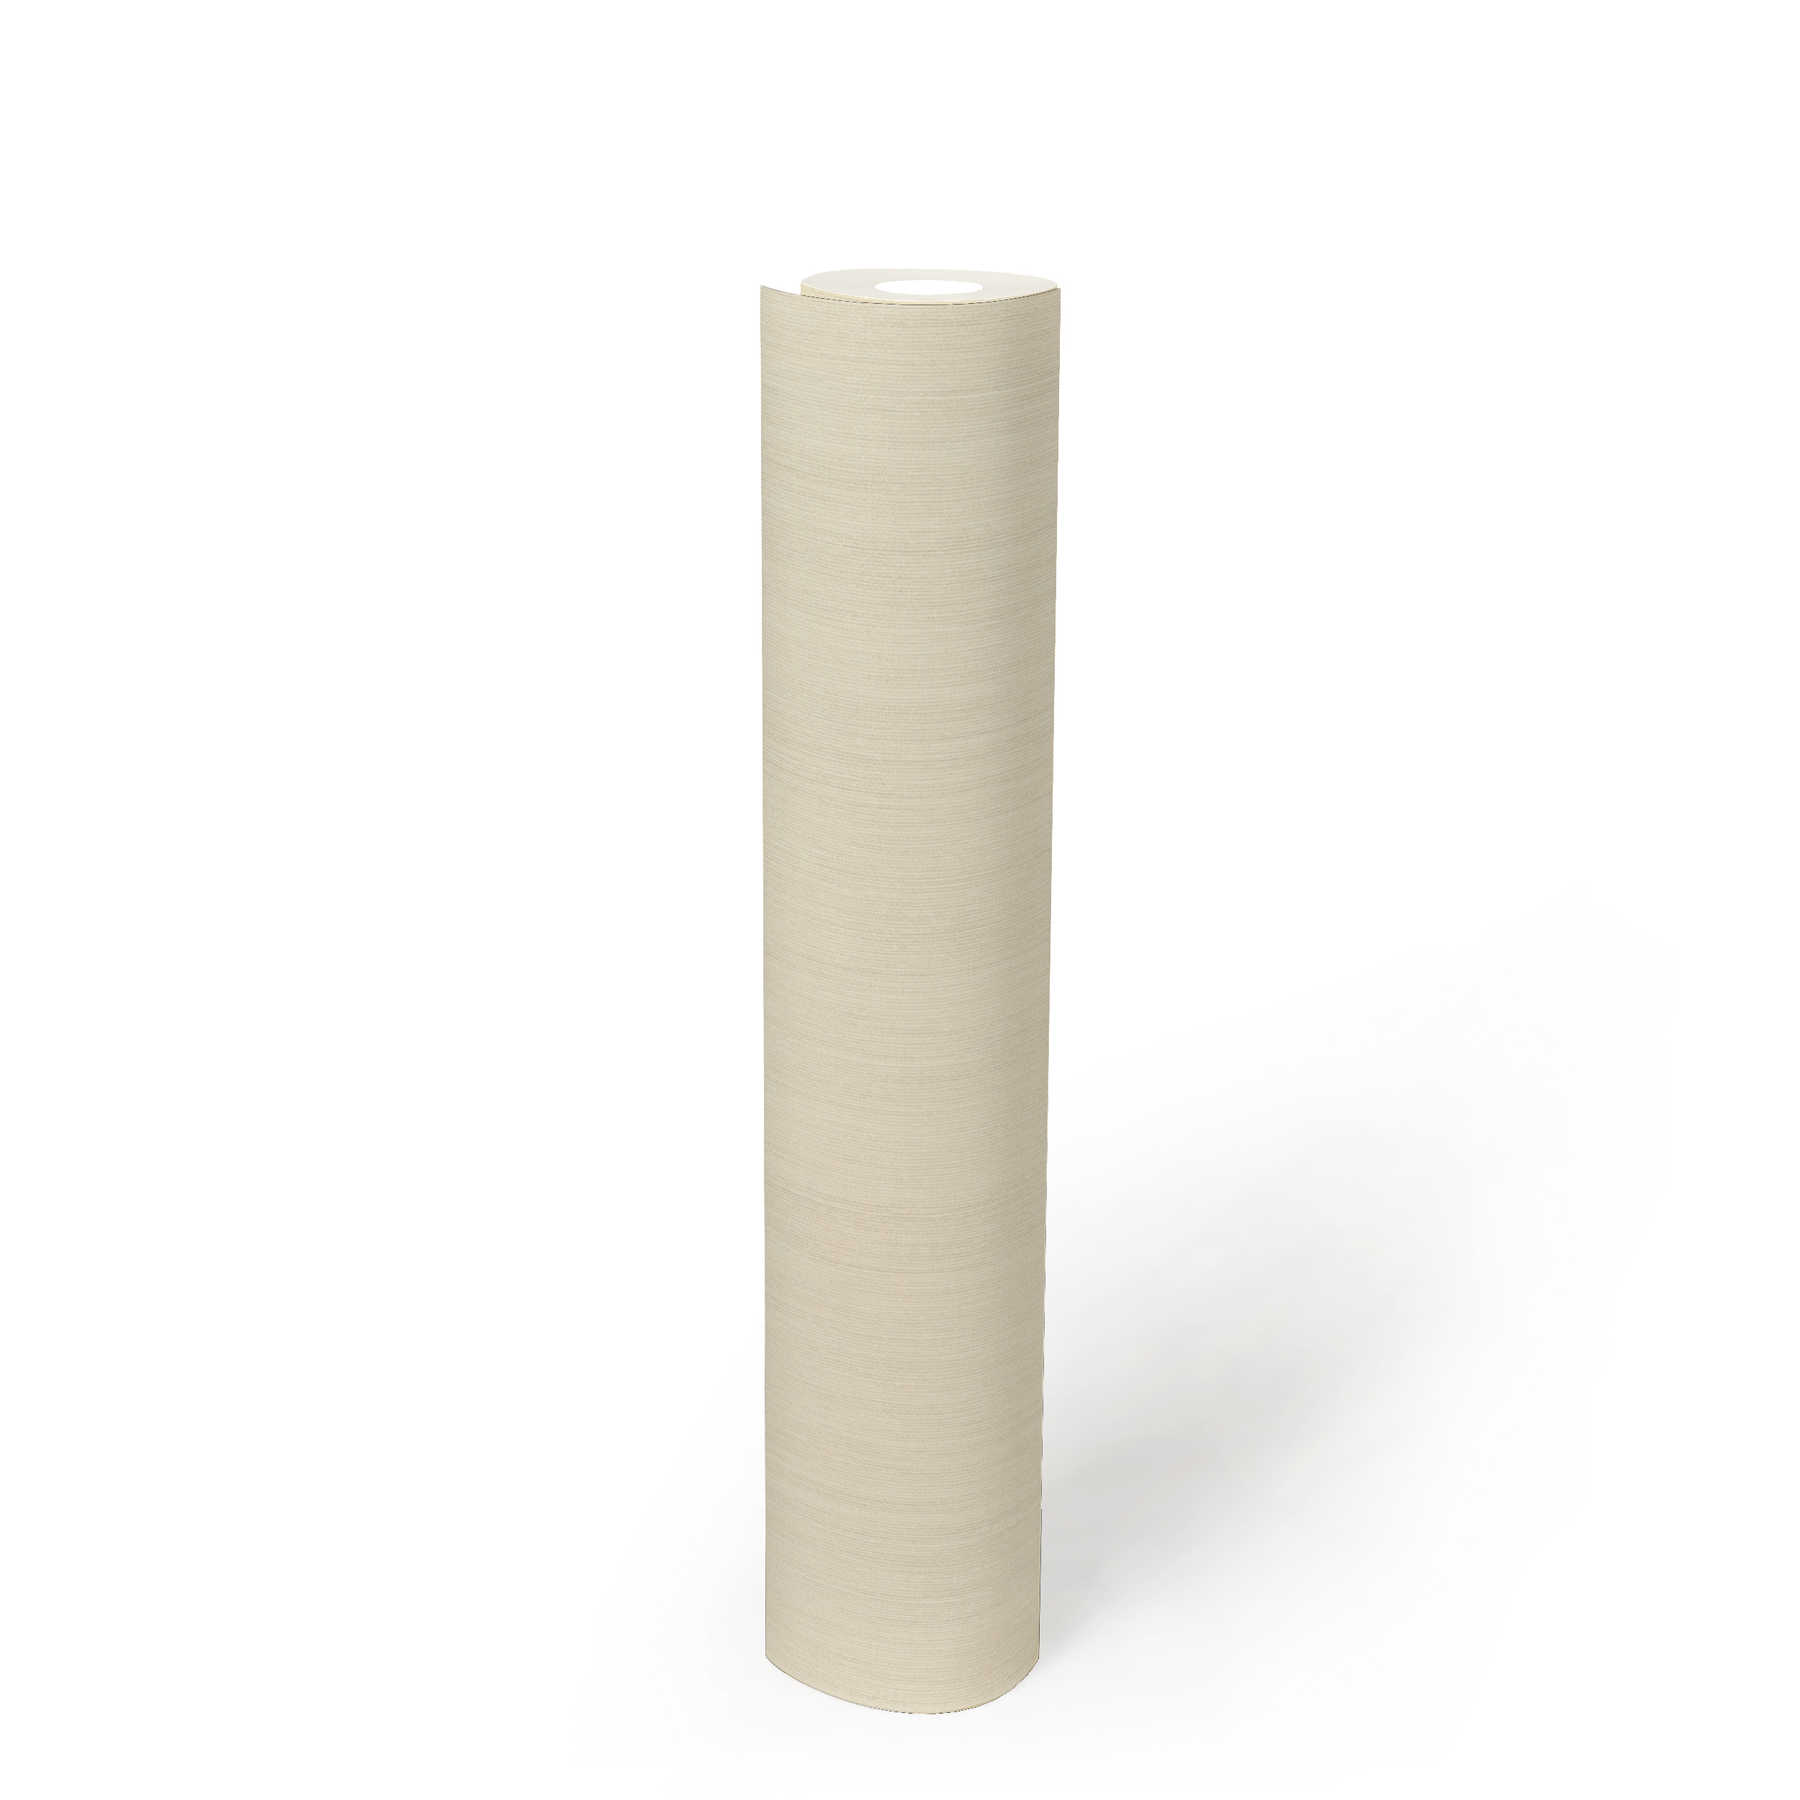             Eenheidsbehang crème-beige met reliëfpatroon & mat oppervlak
        